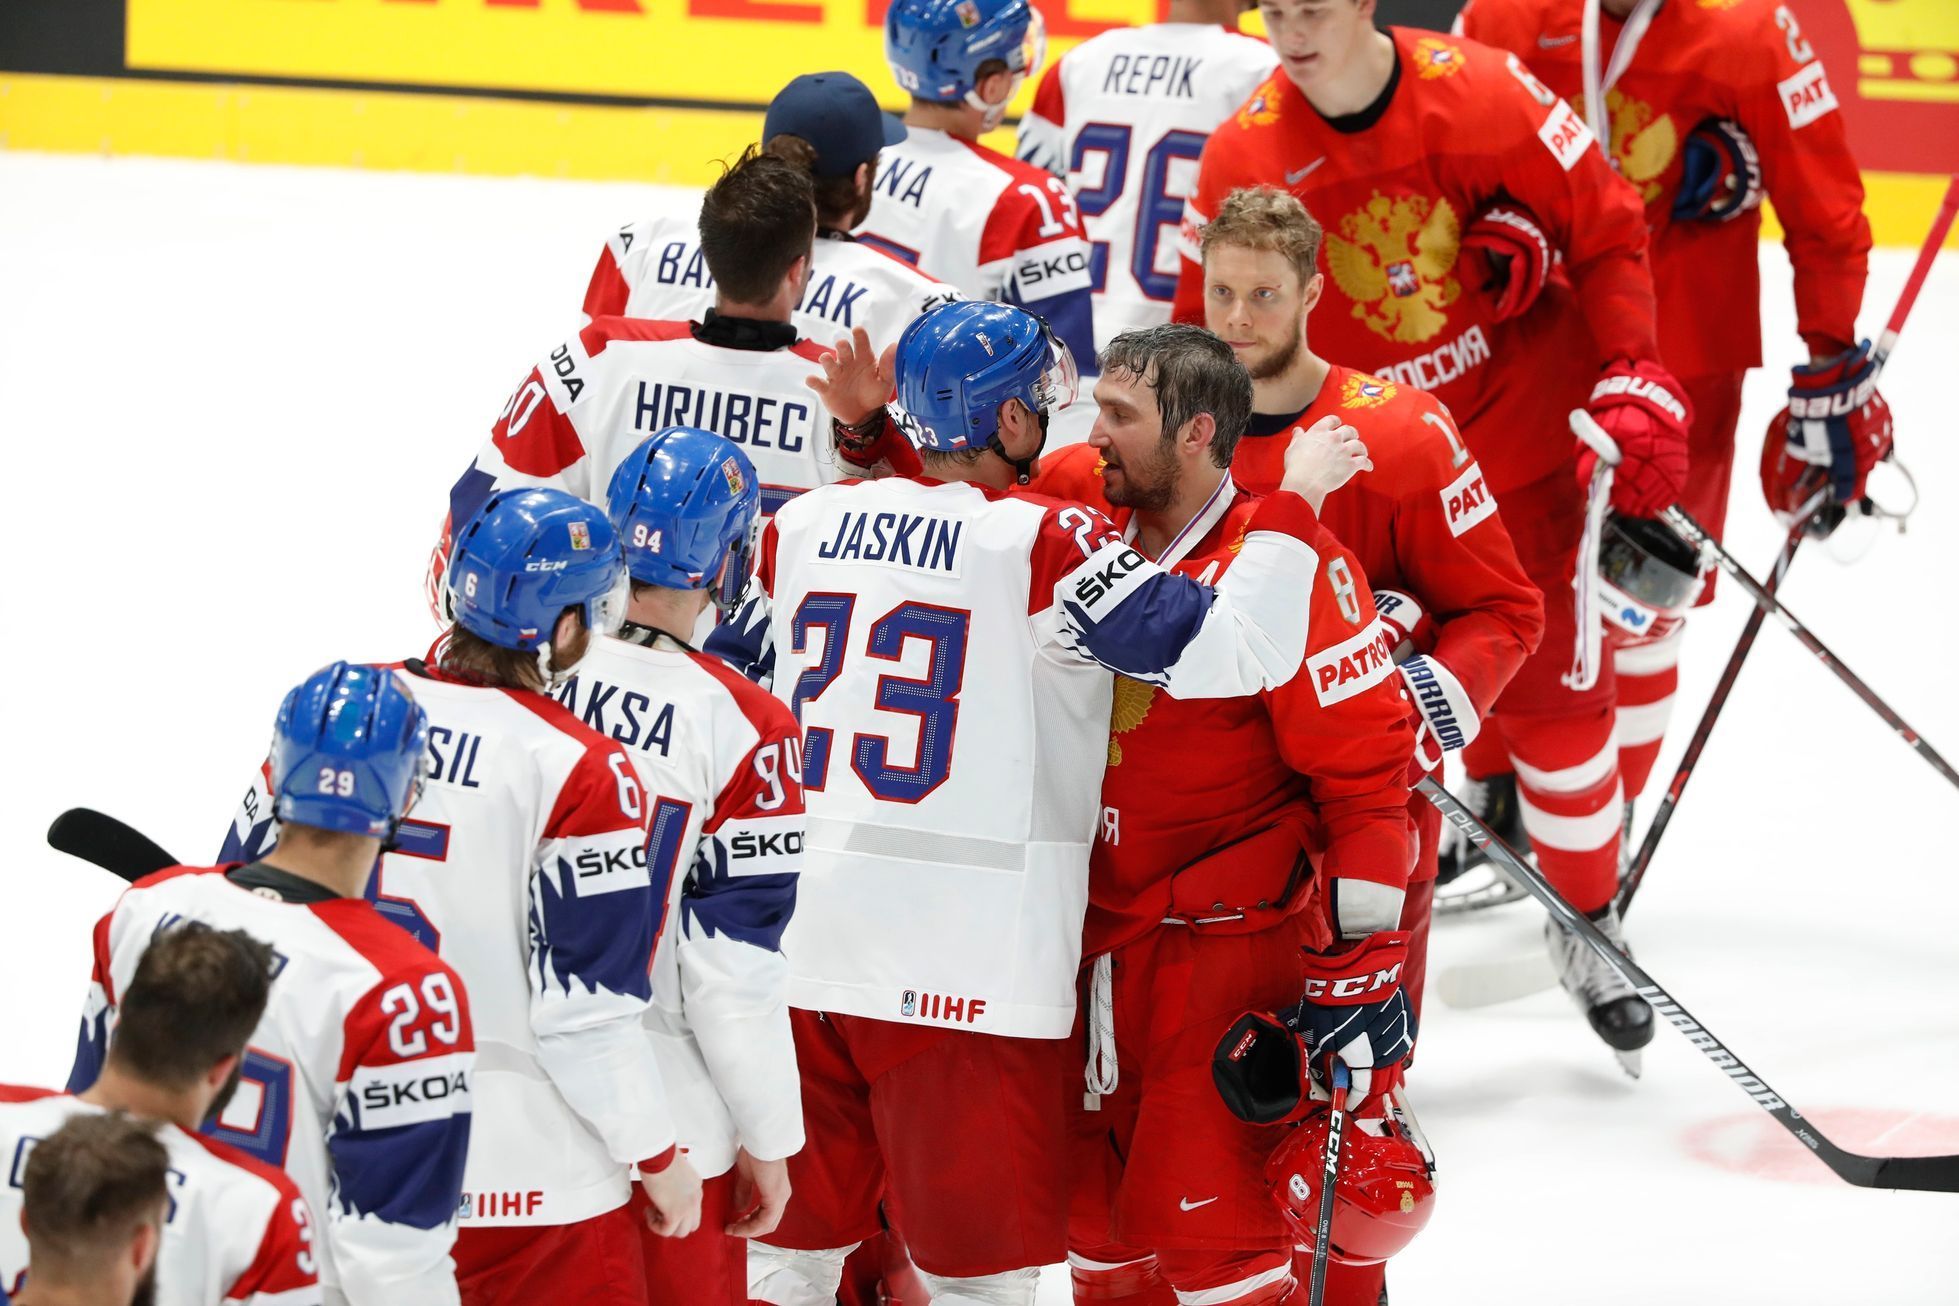 Česko - Rusko na MS v hokeji 2019, zápas o bronz: Alexandr Ovečkin a Dmitrij jaškin